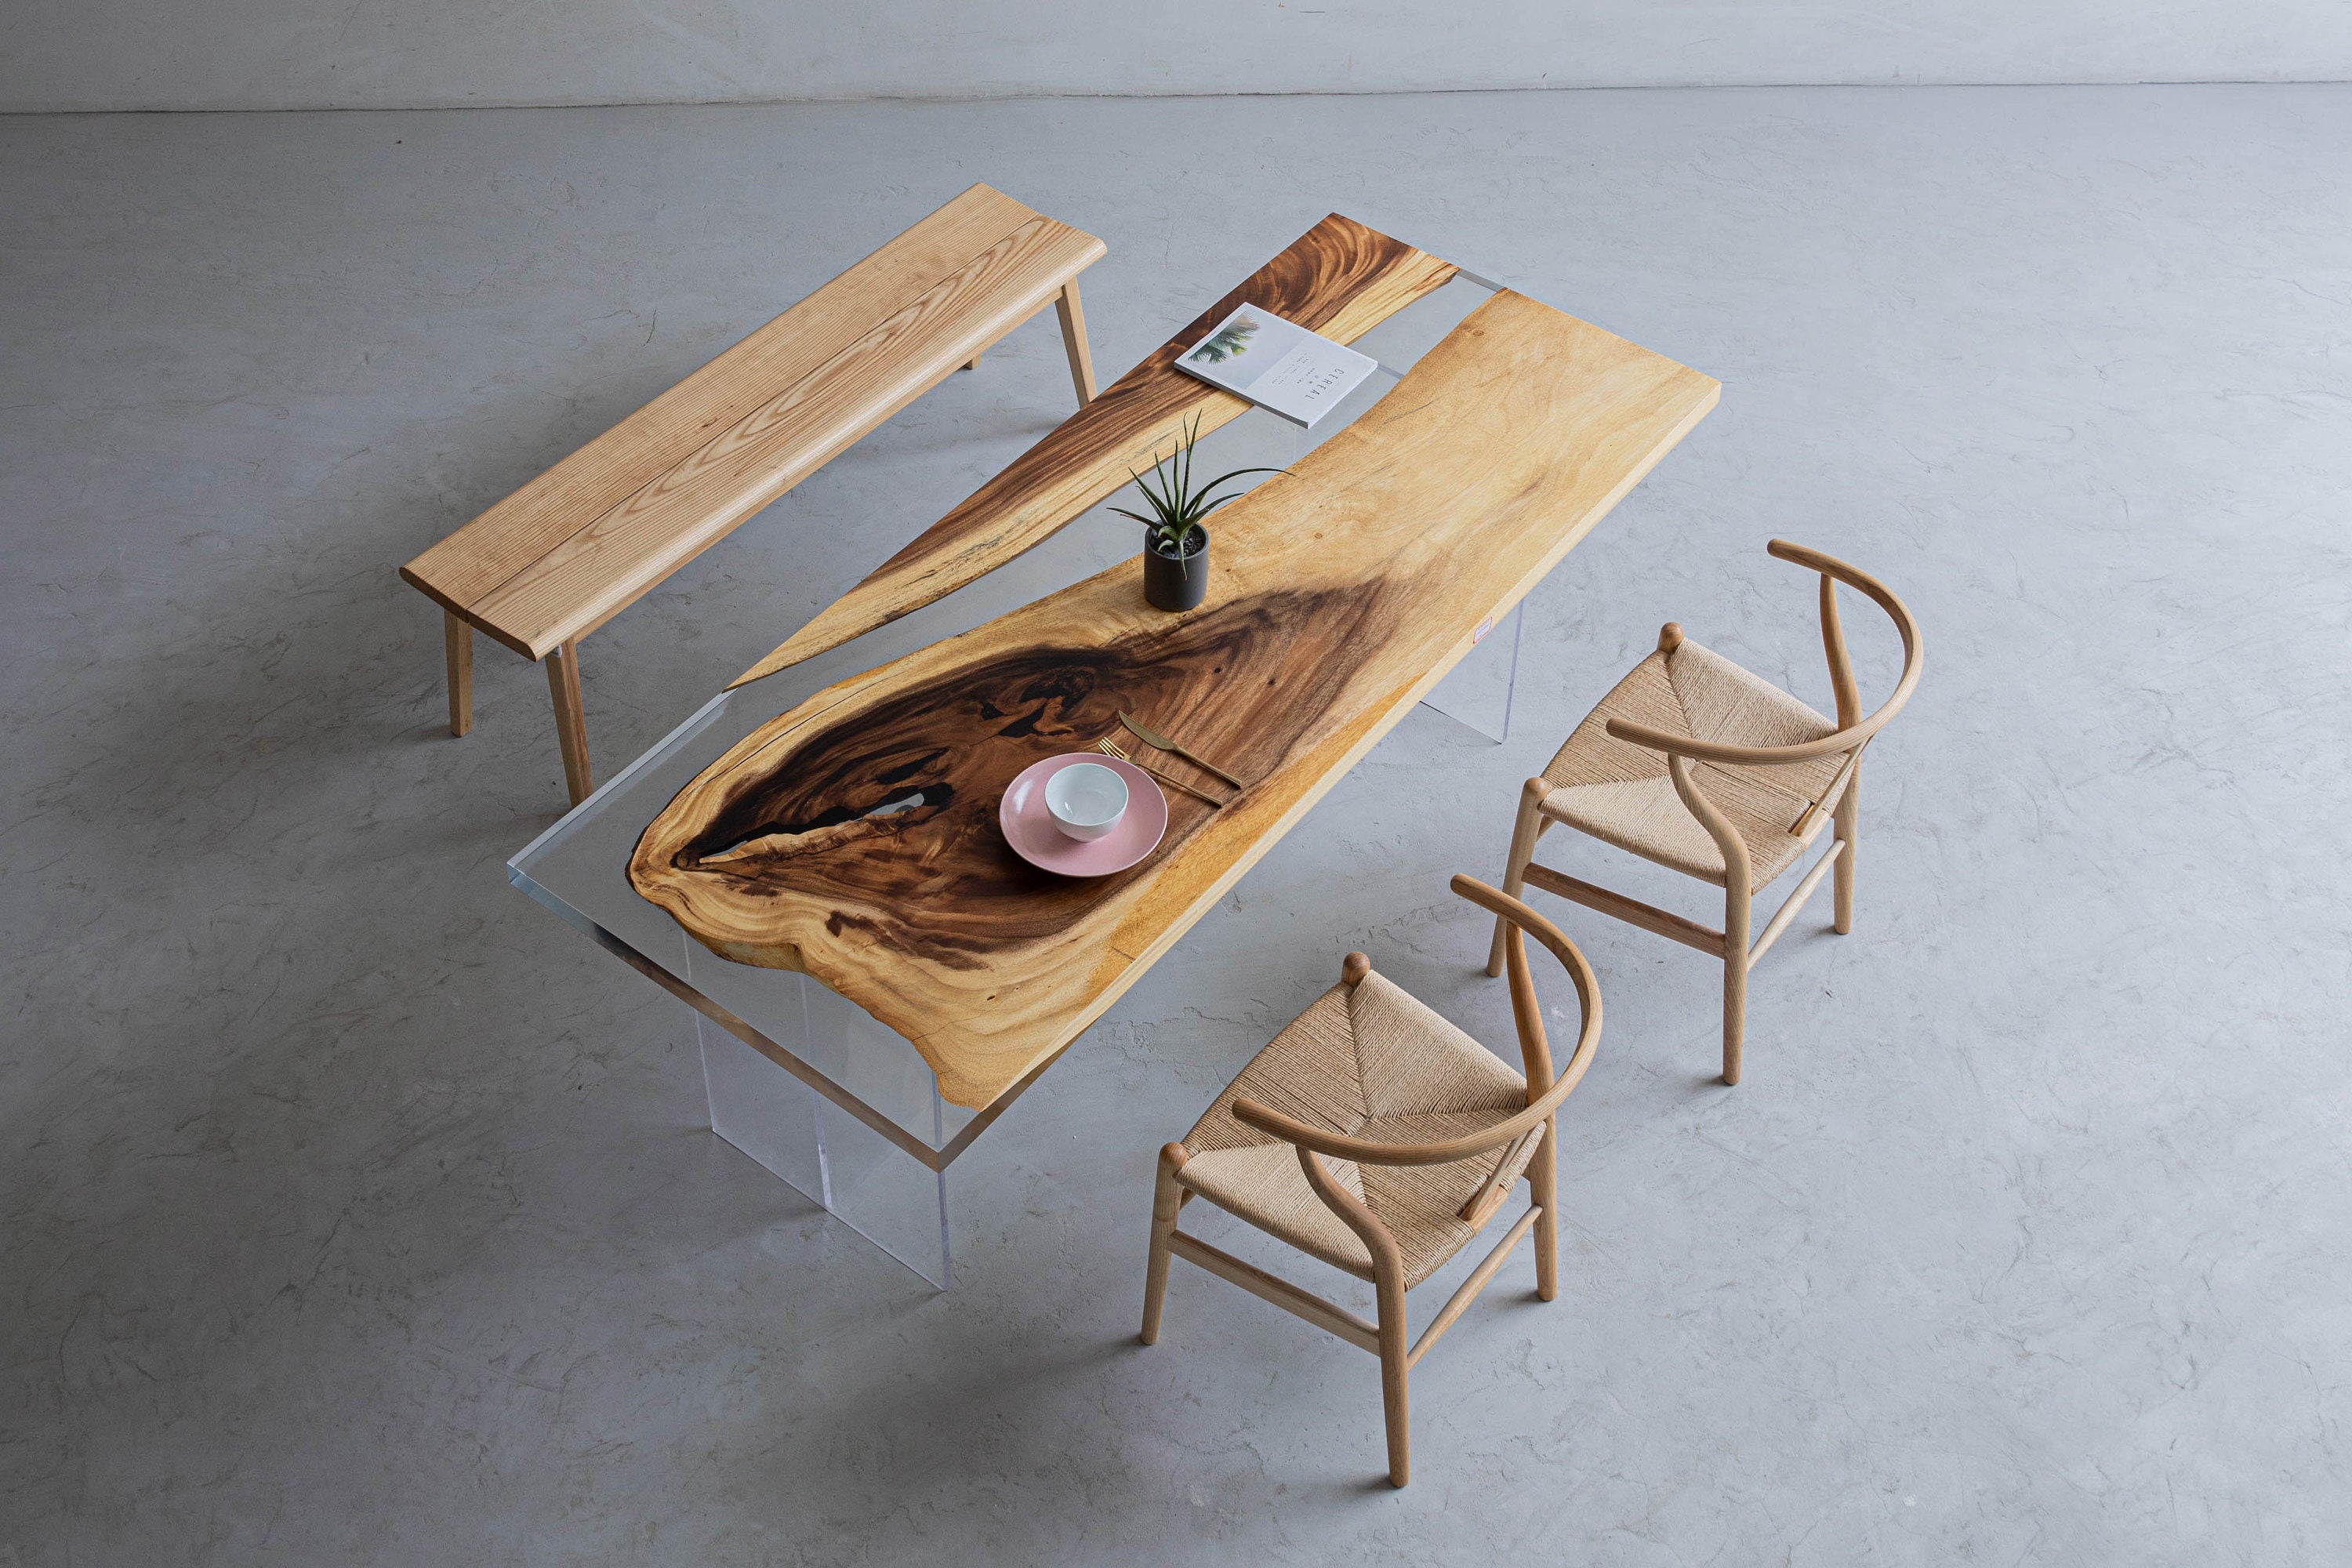 طاولة راتنجات الايبوكسي ذات اللون الفاتح، طاولة من الخشب الصلب، شكل خشبي خاص للاختيار